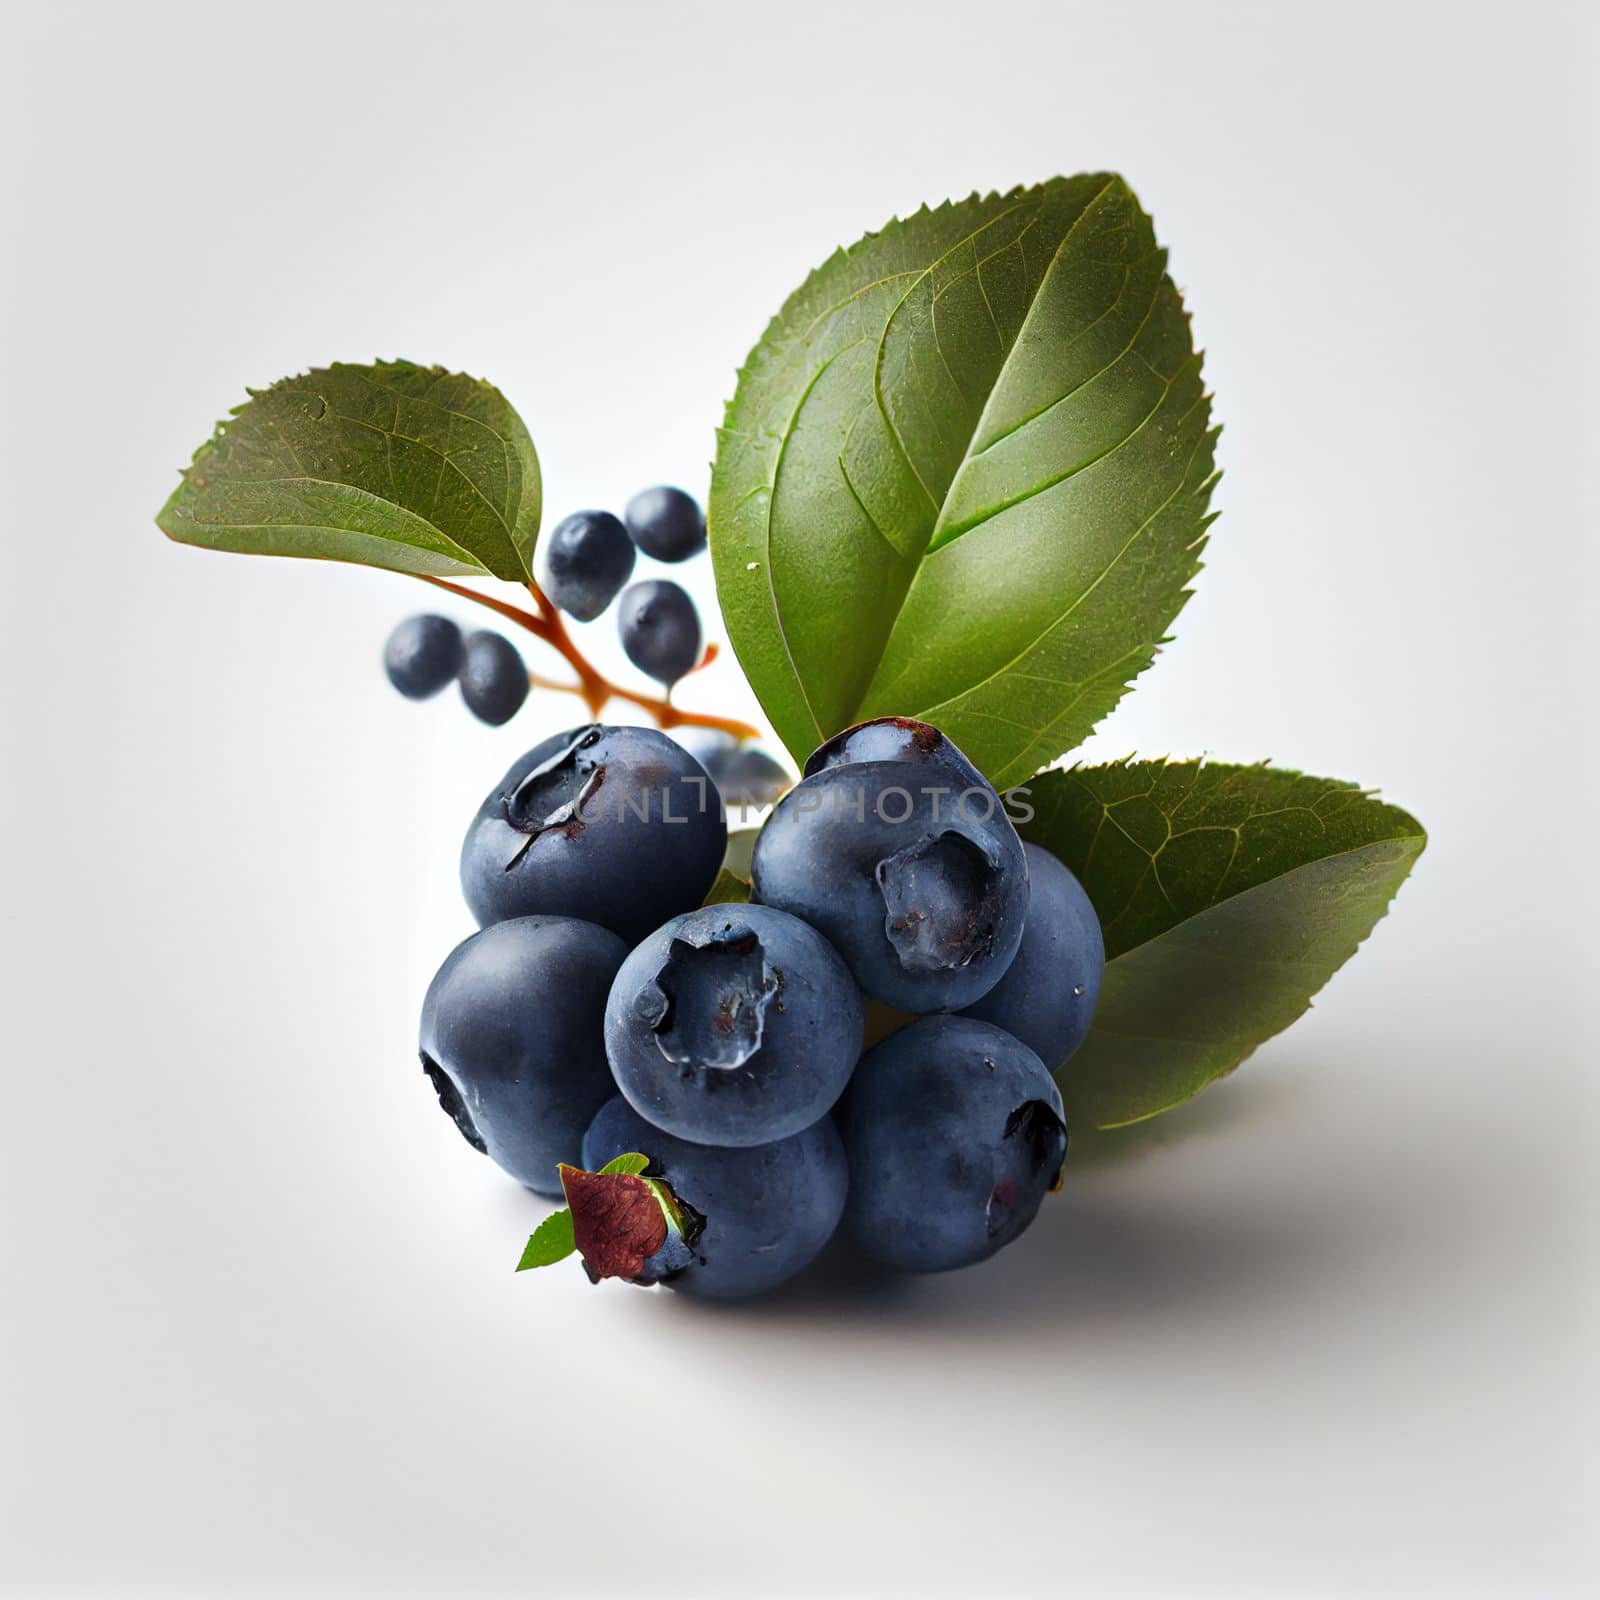 Blueberry fruit isolated on white background. by FokasuArt